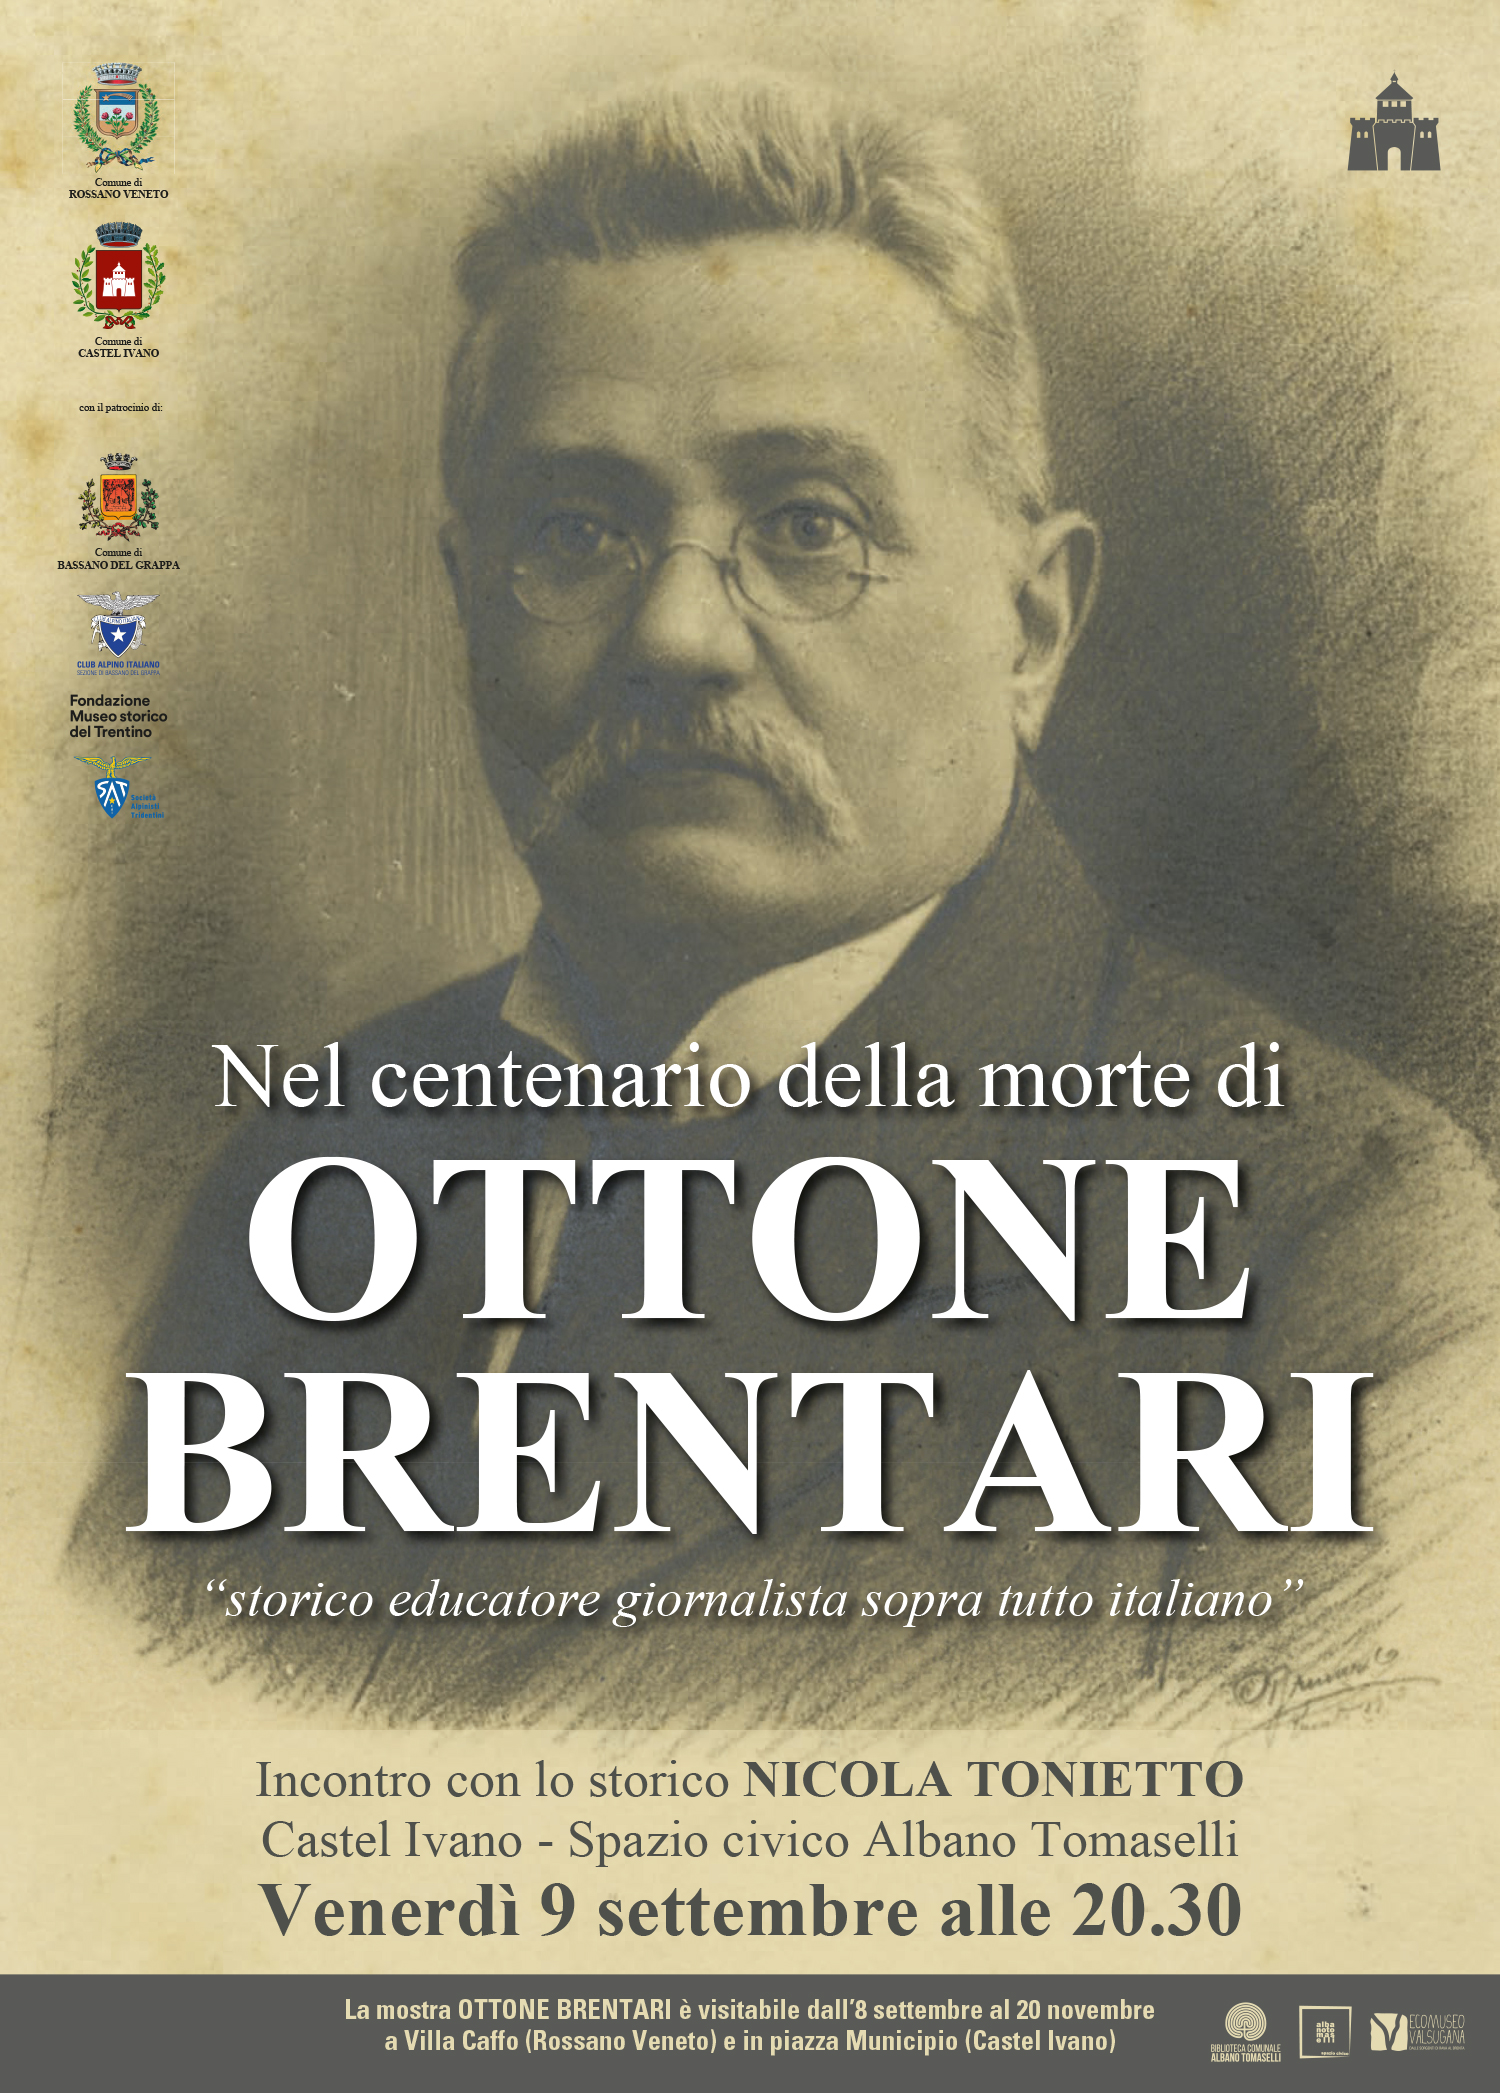 Nel centenario della morte di Ottone Brentari